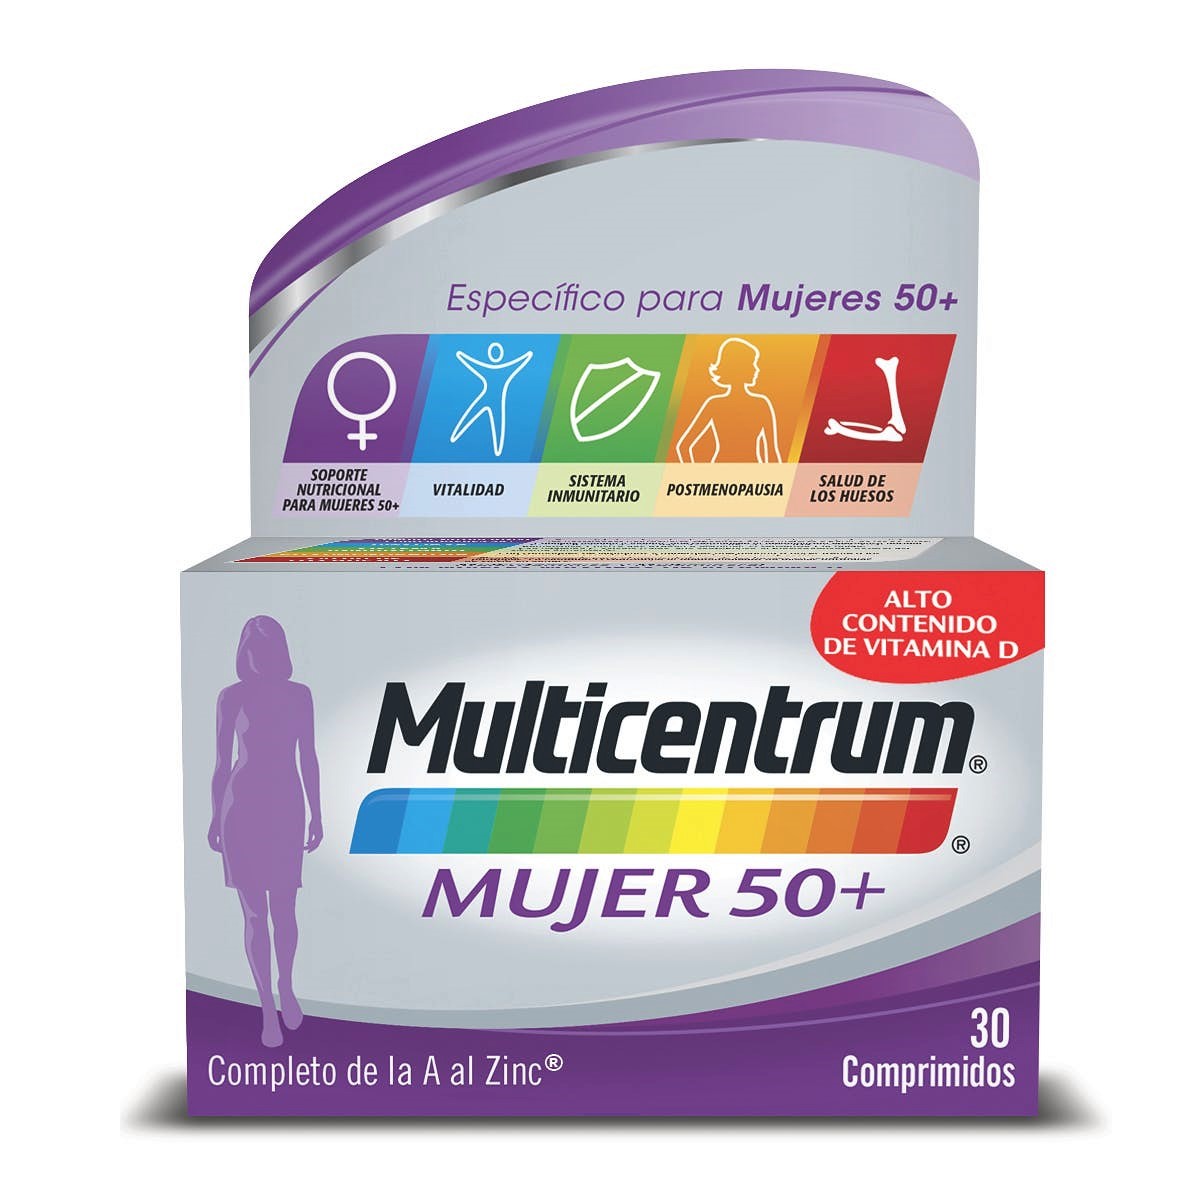 Multicentrum Mujer 50+ Vitamina D y calcio. Manganeso. Magnesio: contribuye a la función psicológica normal